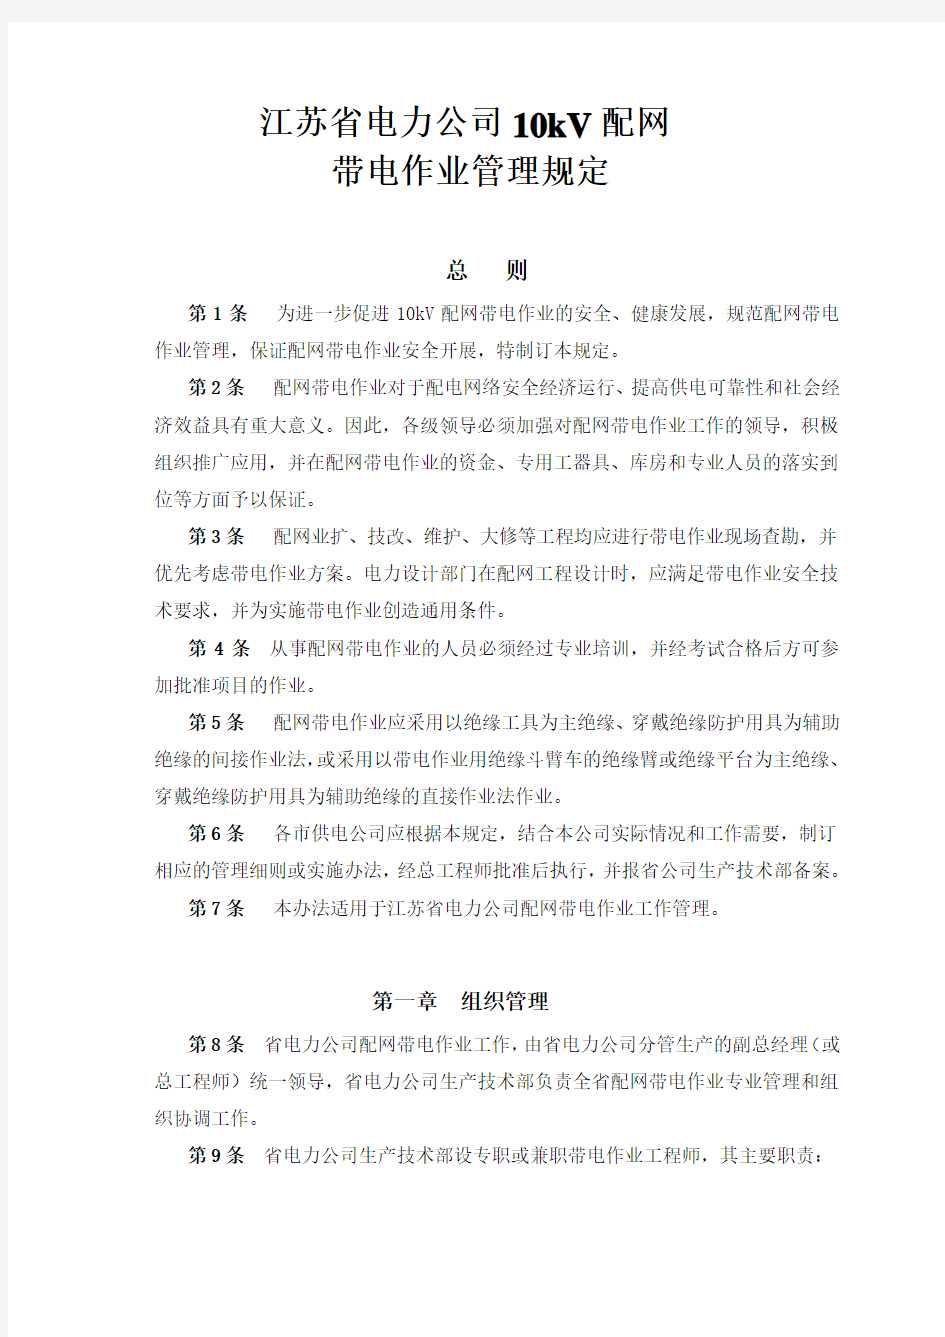 江苏省电力公司10kV配网带电作业管理规定